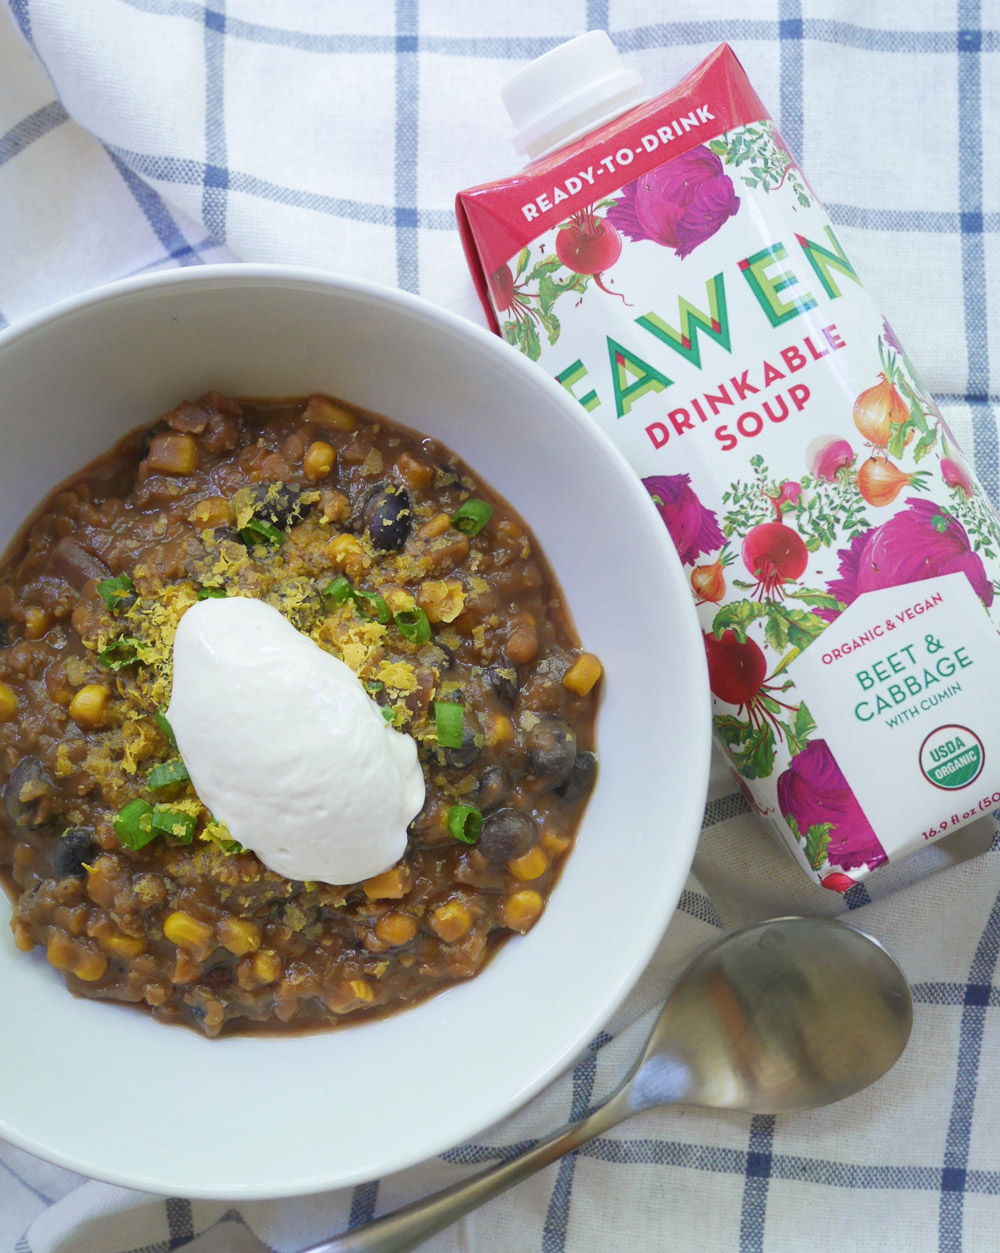 Fawen Organic Vegan Soup, Quick & Easy Chili